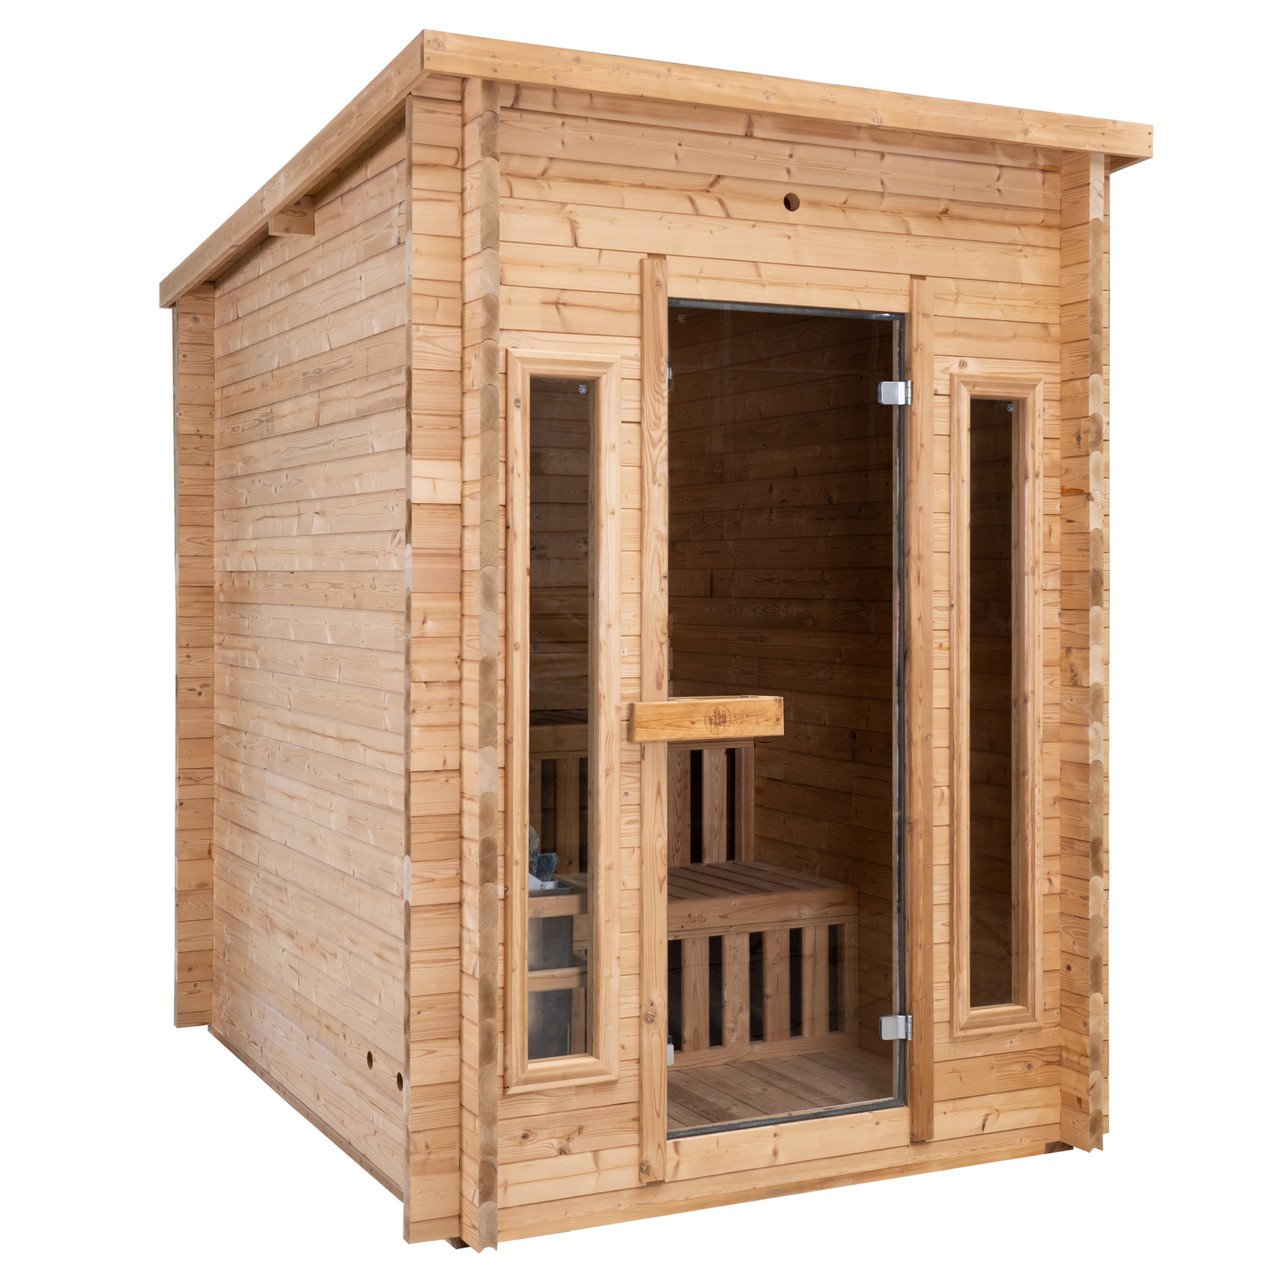 https://www.garagegymreviews.com/wp-content/uploads/redwood-outdoors-sauna.jpg